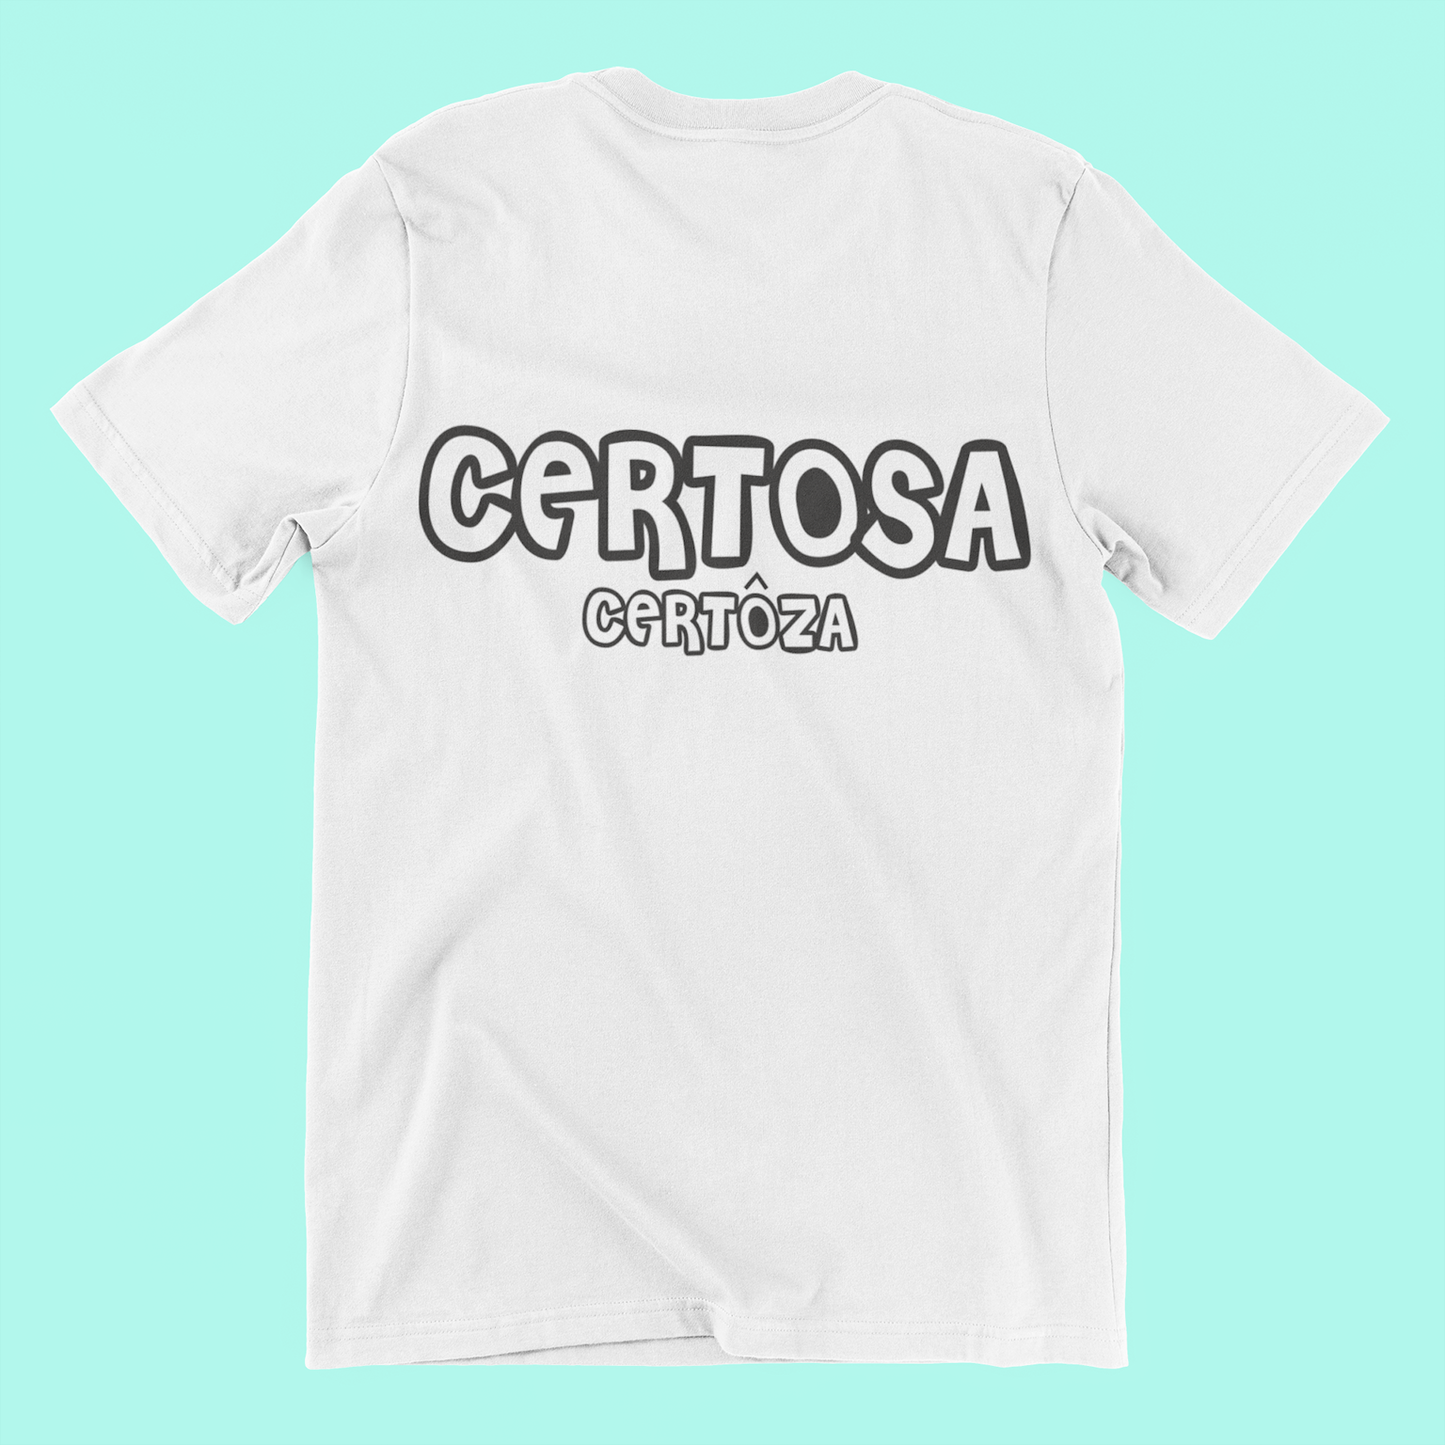 T-Shirt CERTOSA in Zeneize